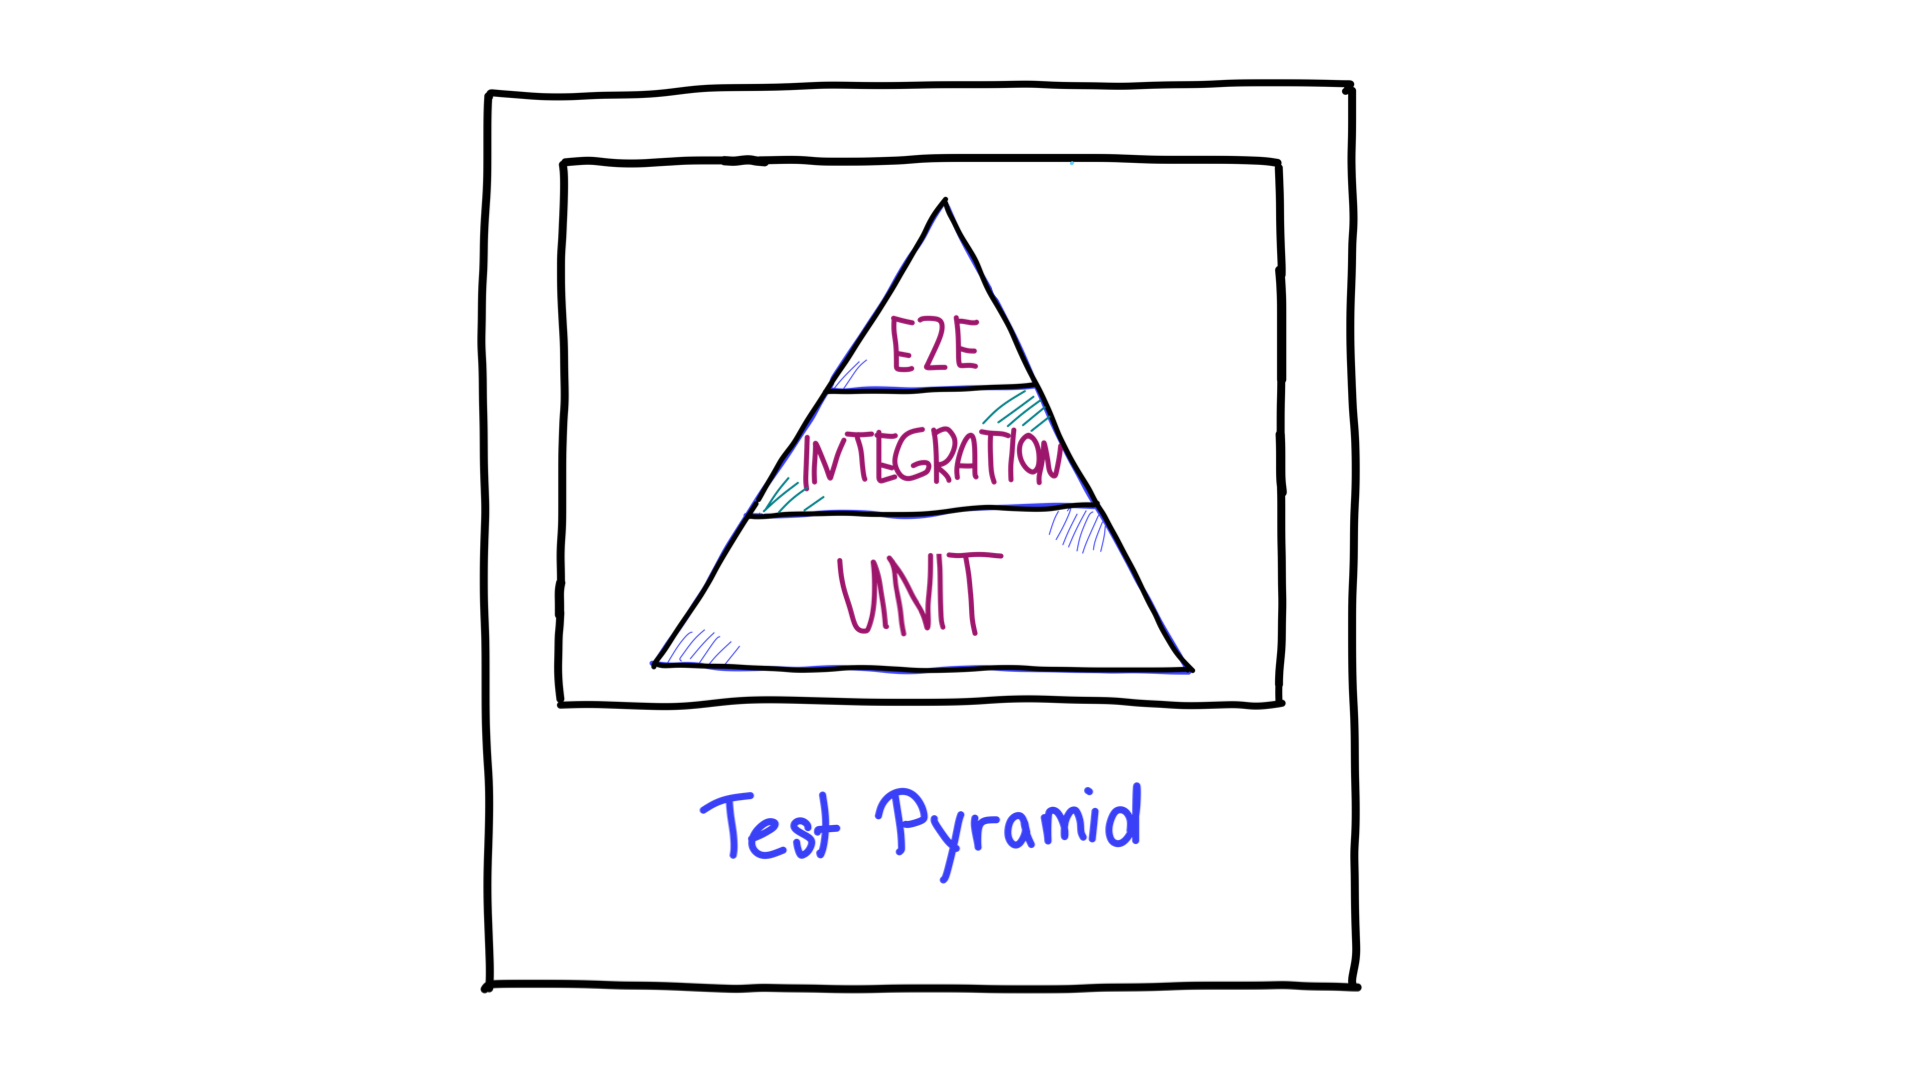 A pirâmide de teste.